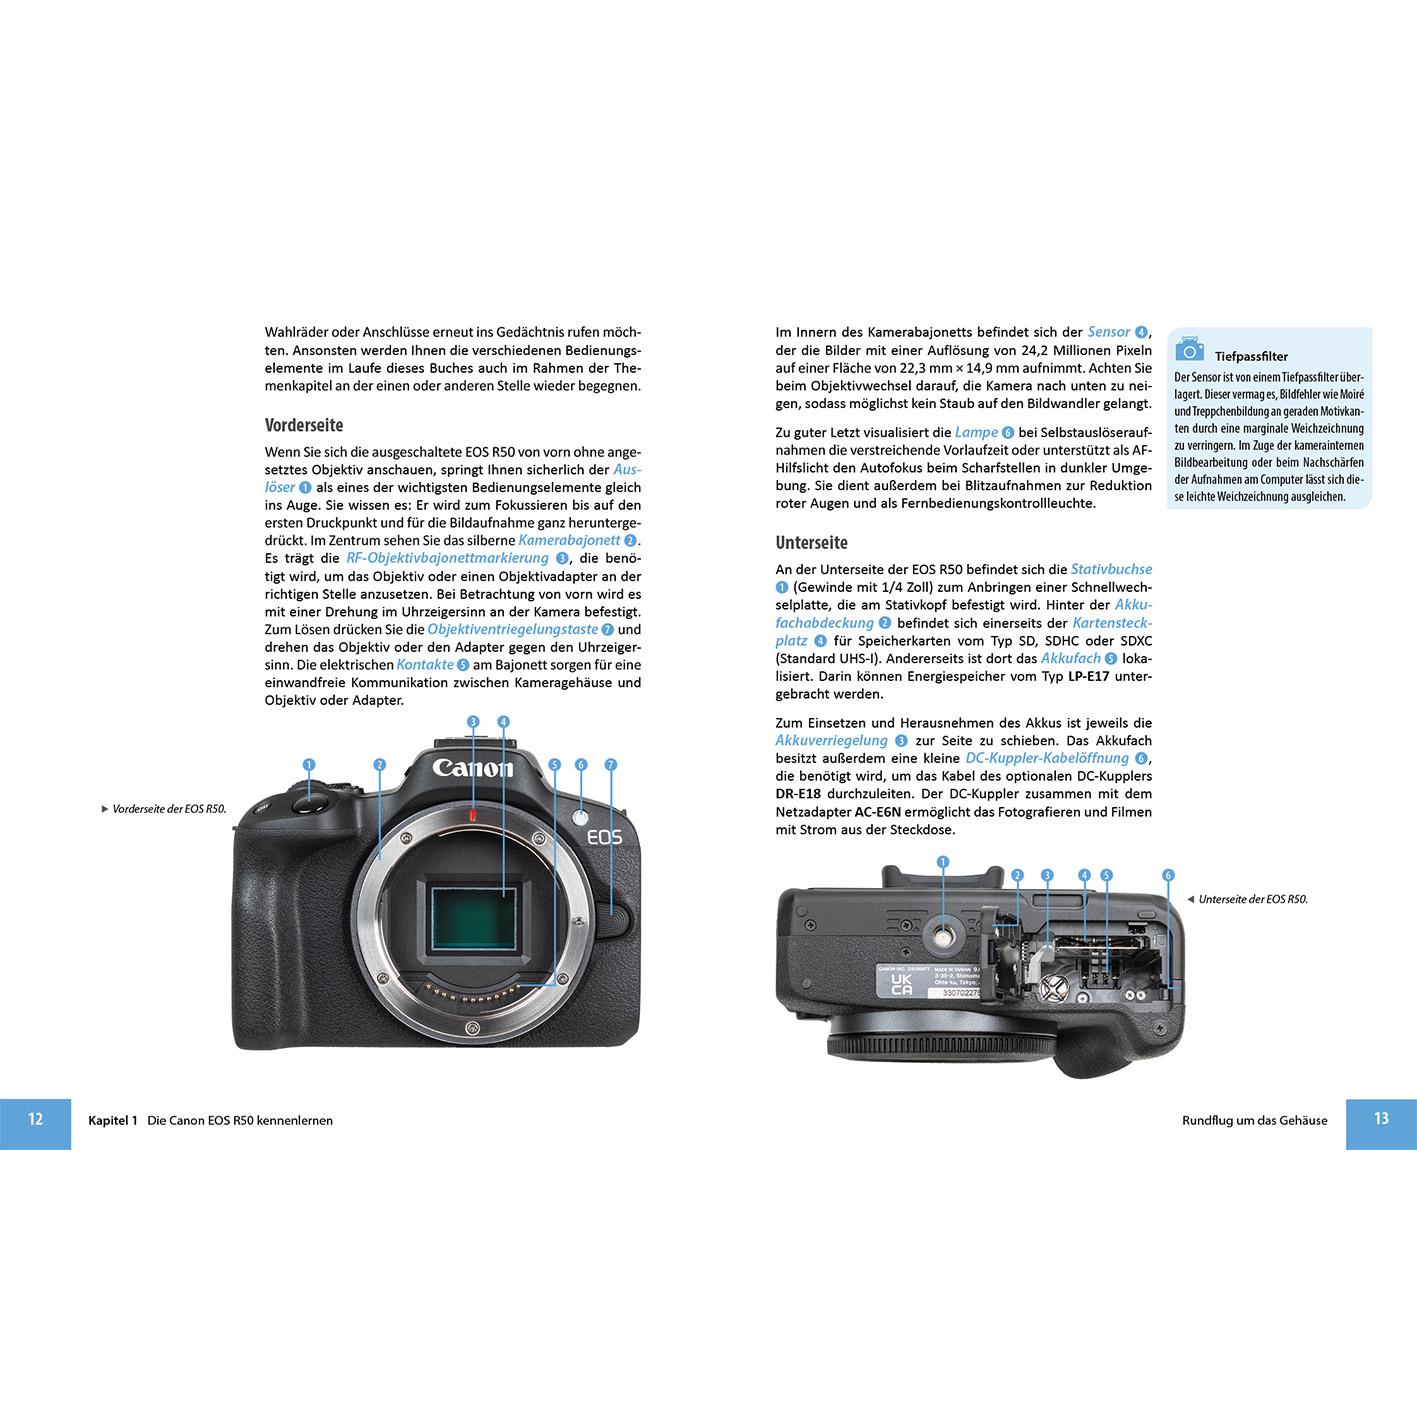 Canon EOS R50 Das Kamera umfangreiche Praxisbuch Ihrer zu 